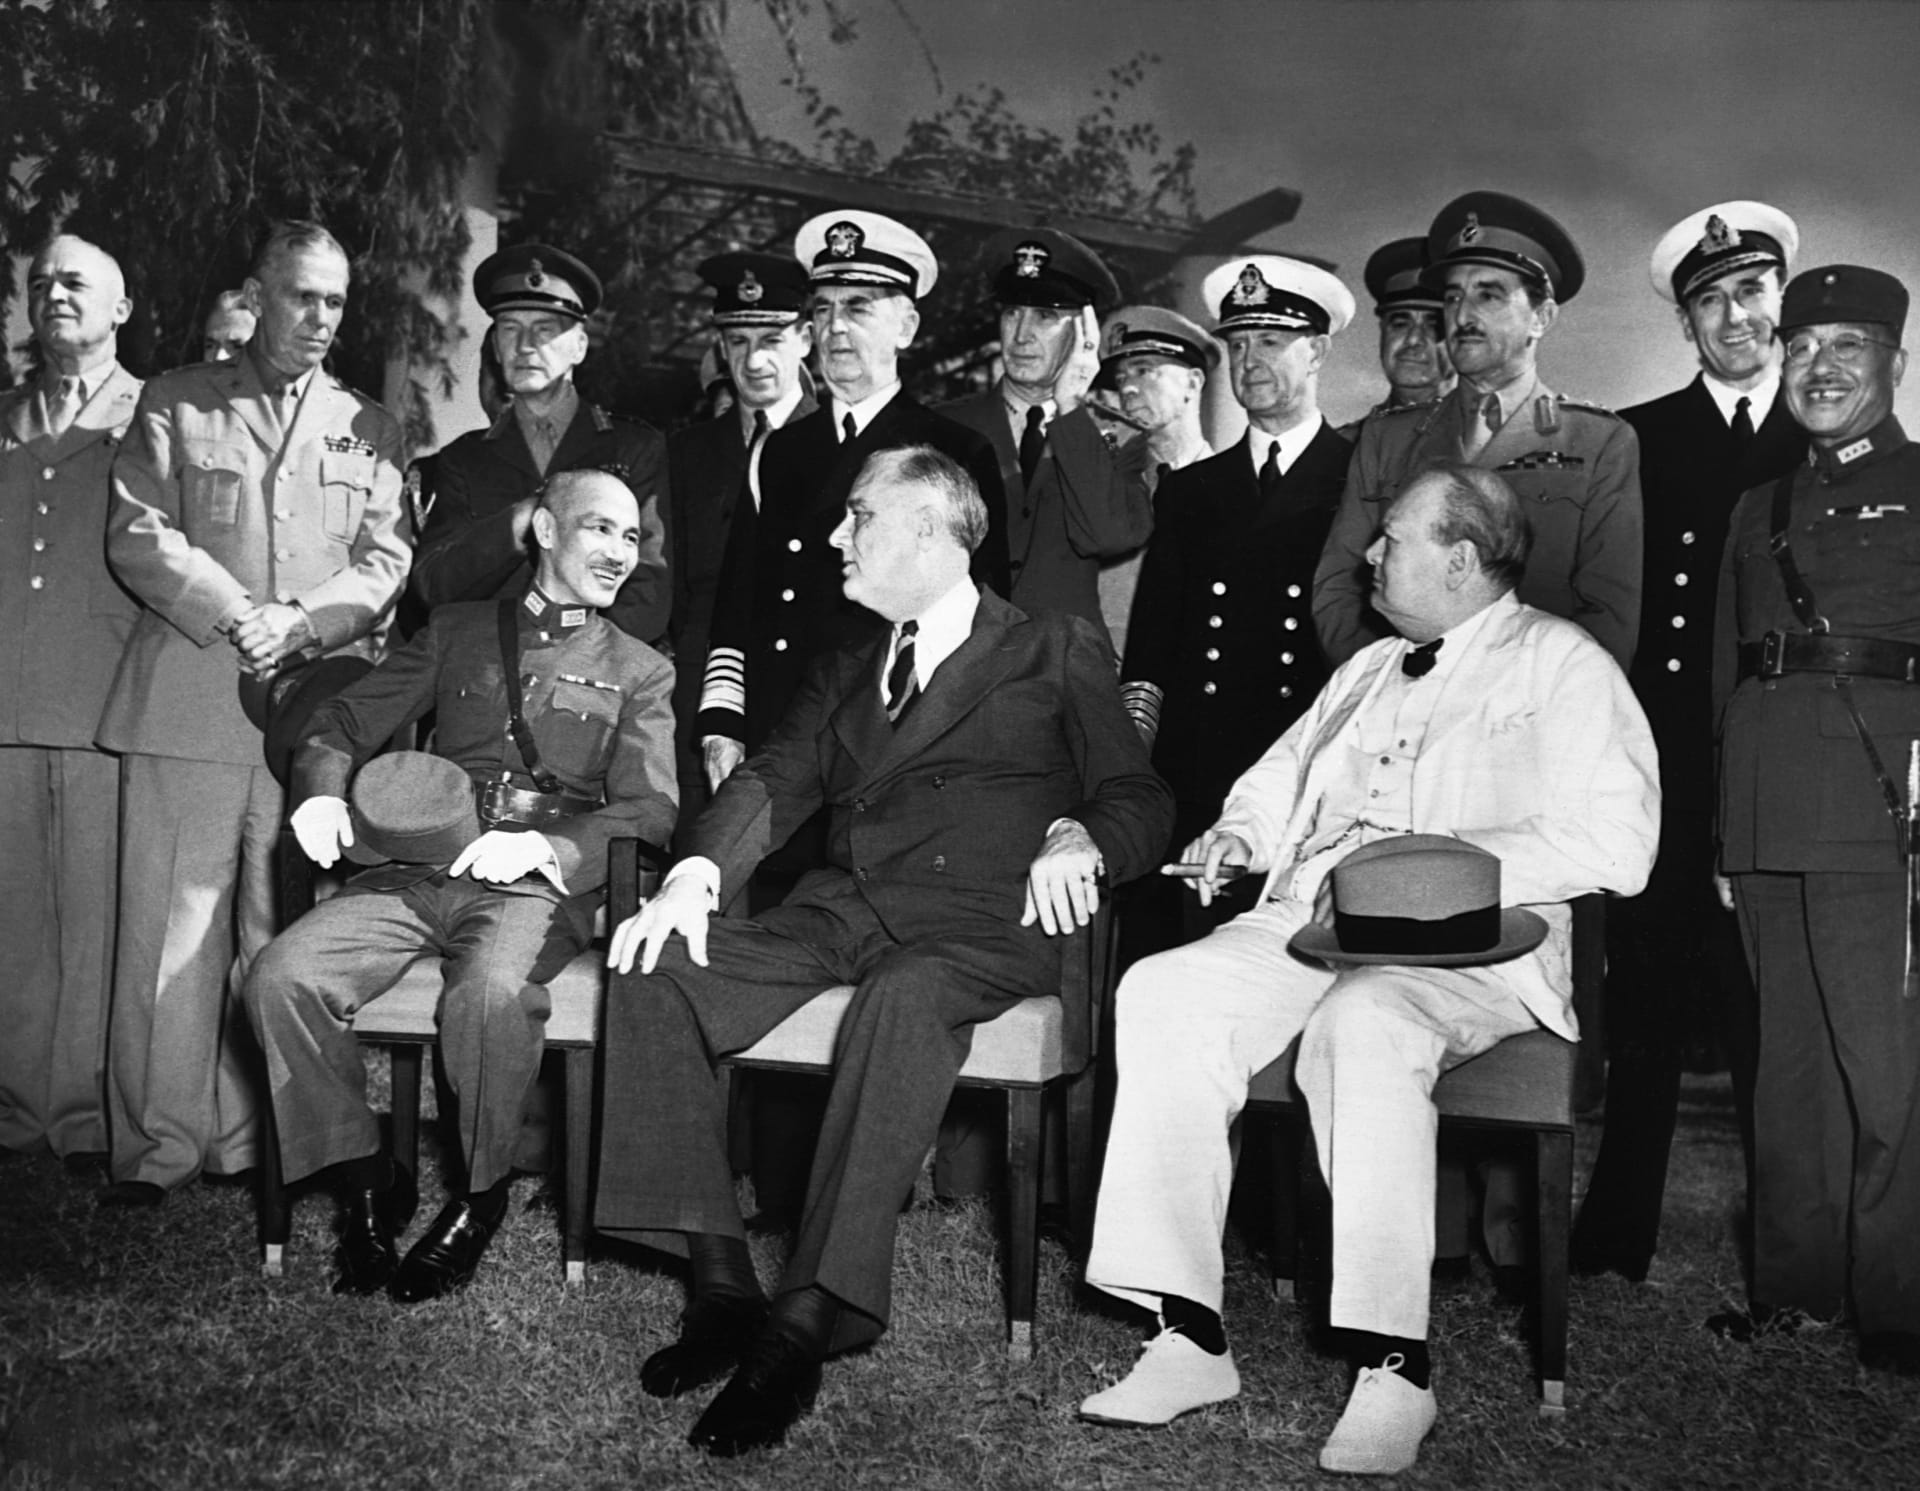 Generál Čankajšek (sedící vlevo) v roce 1943 na konferenci v Káhiře spolu s Winstonem Churchillem a Franklinem D. Rooseveltem